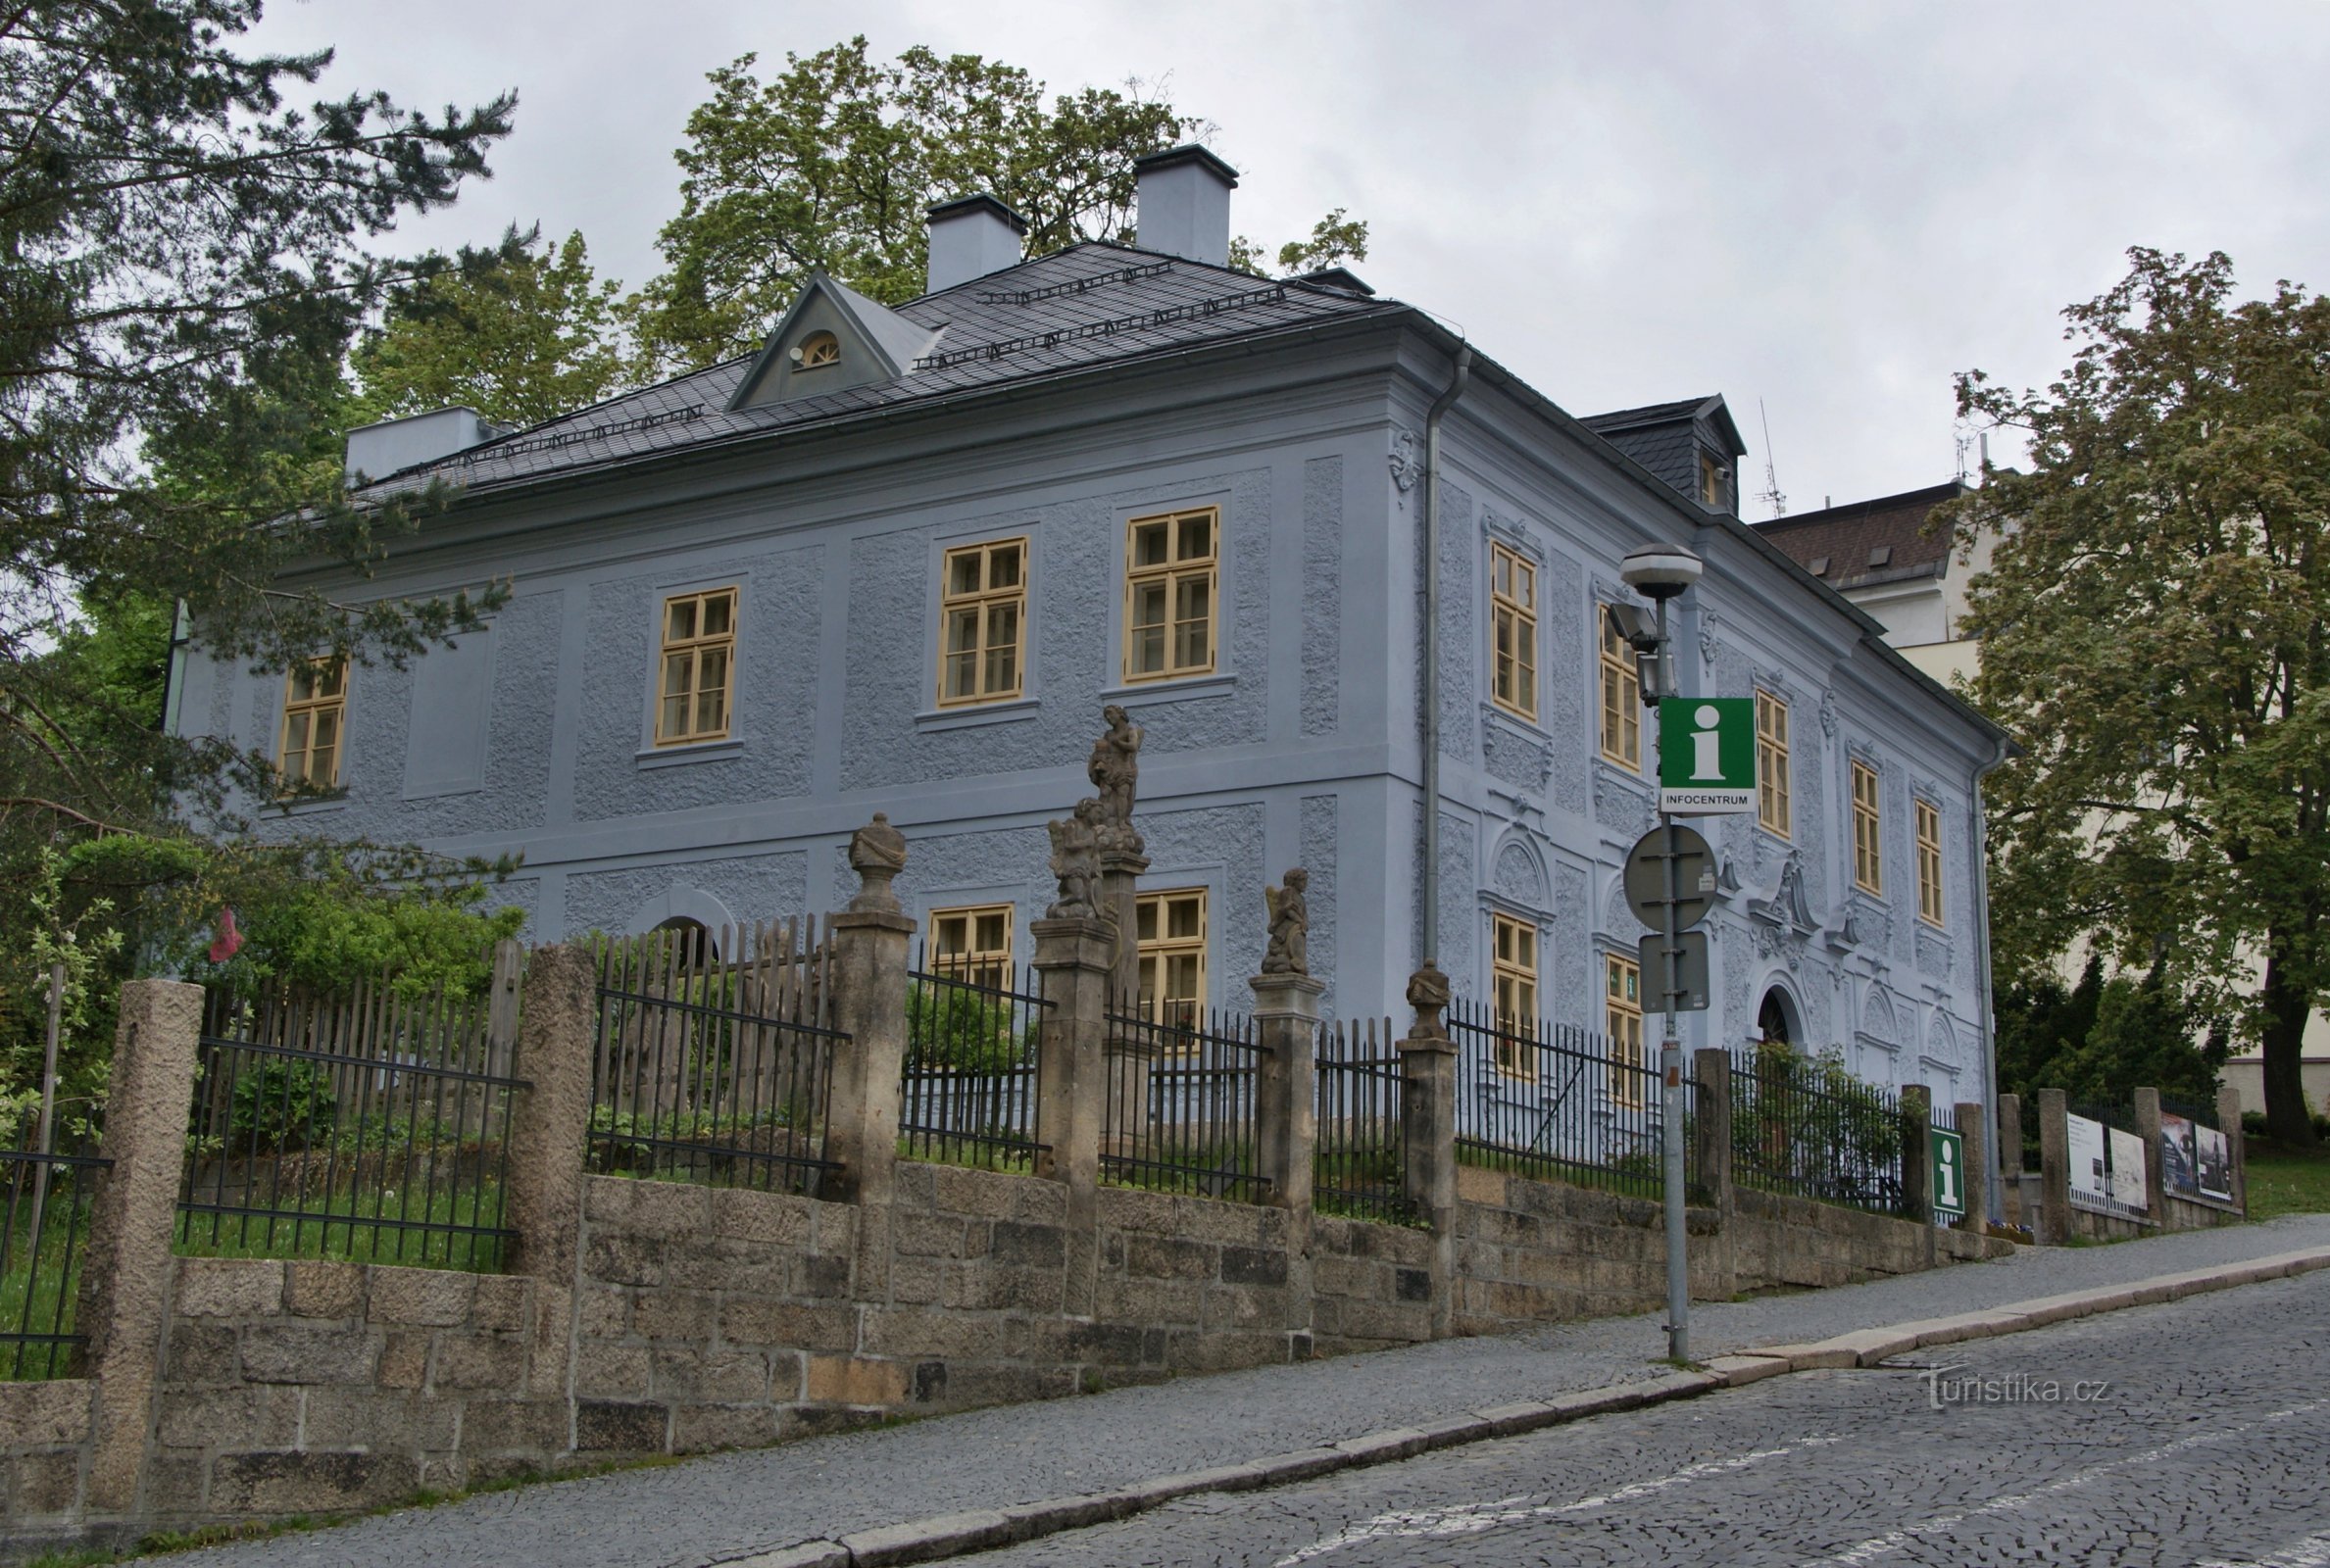 Jablonec nad Nisou – House of Jana and Josef V. Scheybalová